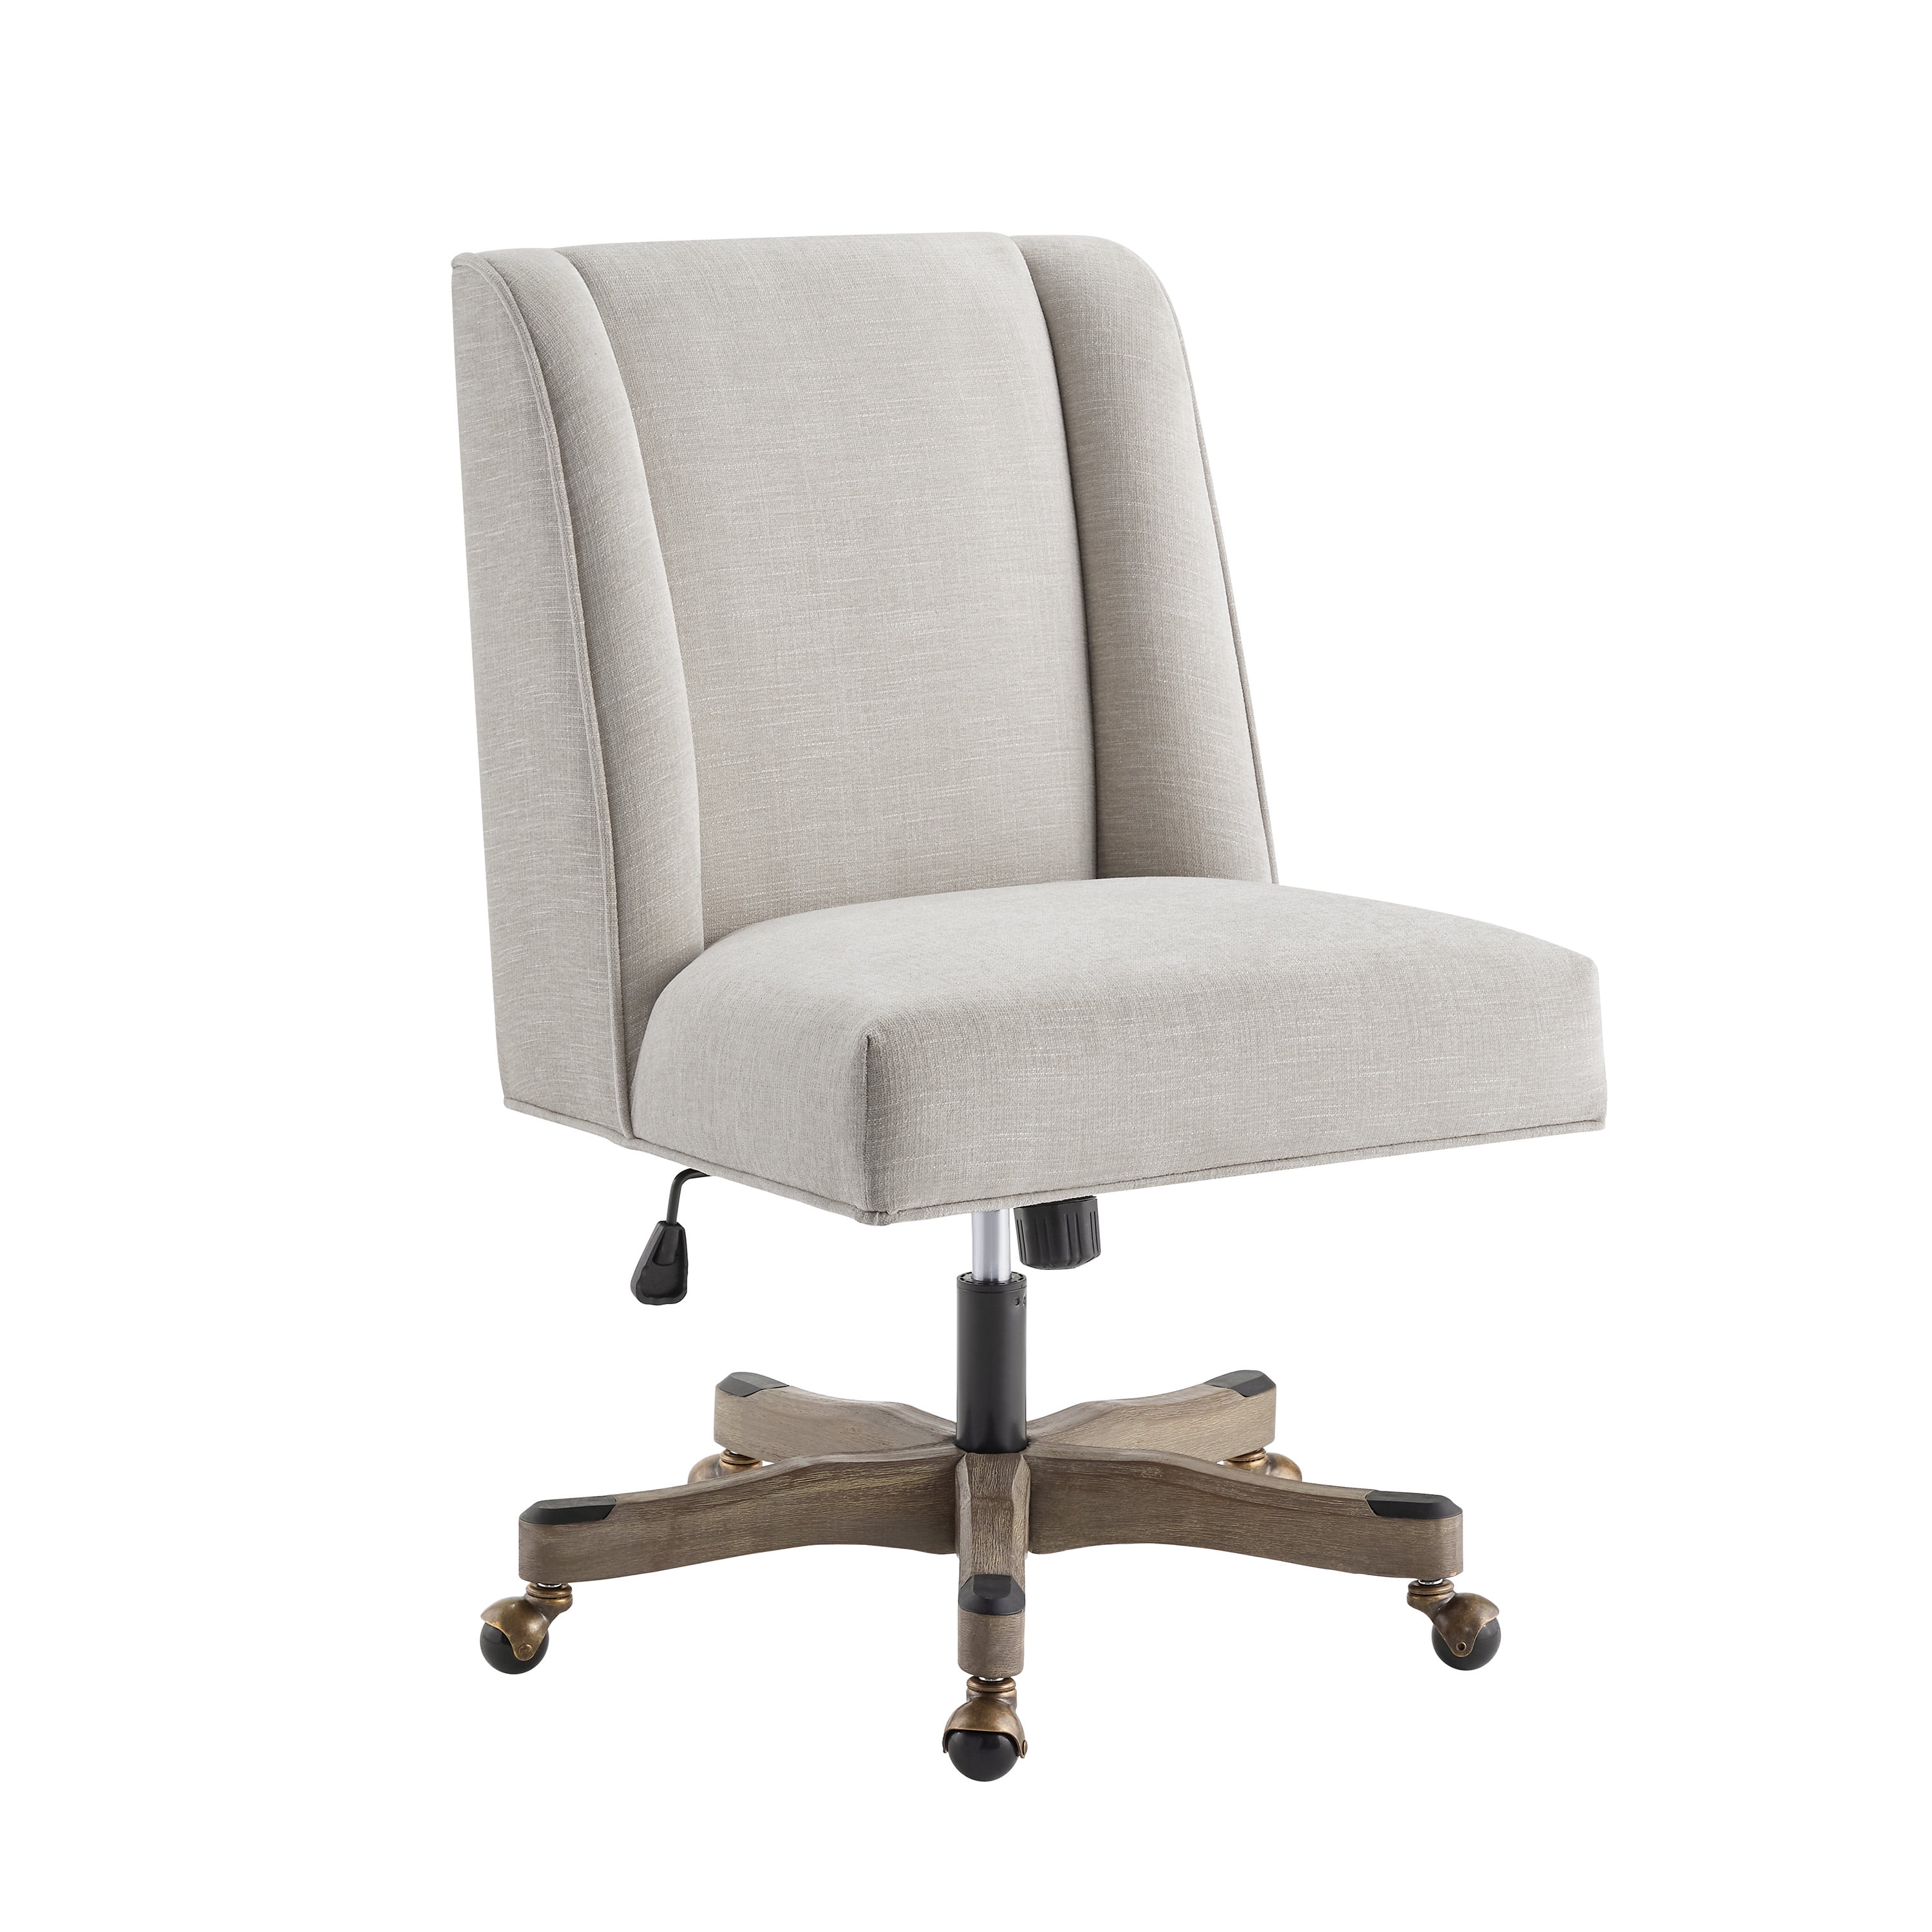 Linon Draper Upholstered Swivel Office Chair Natural Linen - Walmart